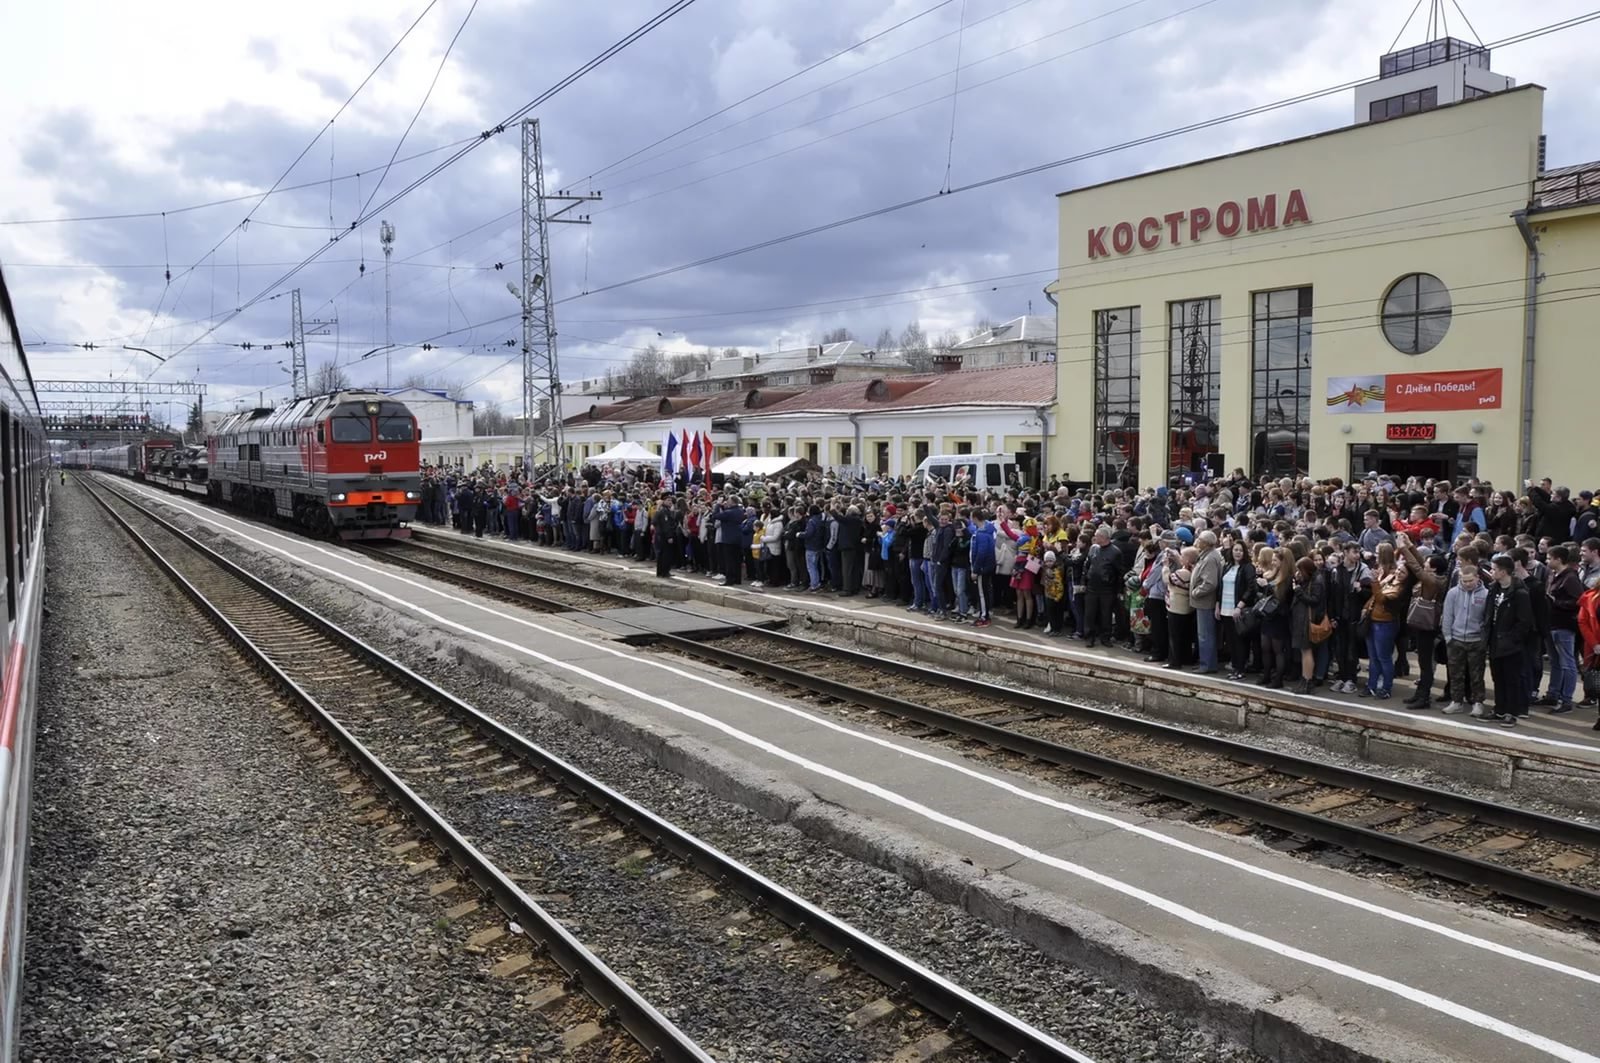 Кострома екатеринбург поезд. Станция Кострома новая. Вокзал в Костроме Кострома новая. Кострома новая ЖД вокзал. Вокзал Кострома поезда.